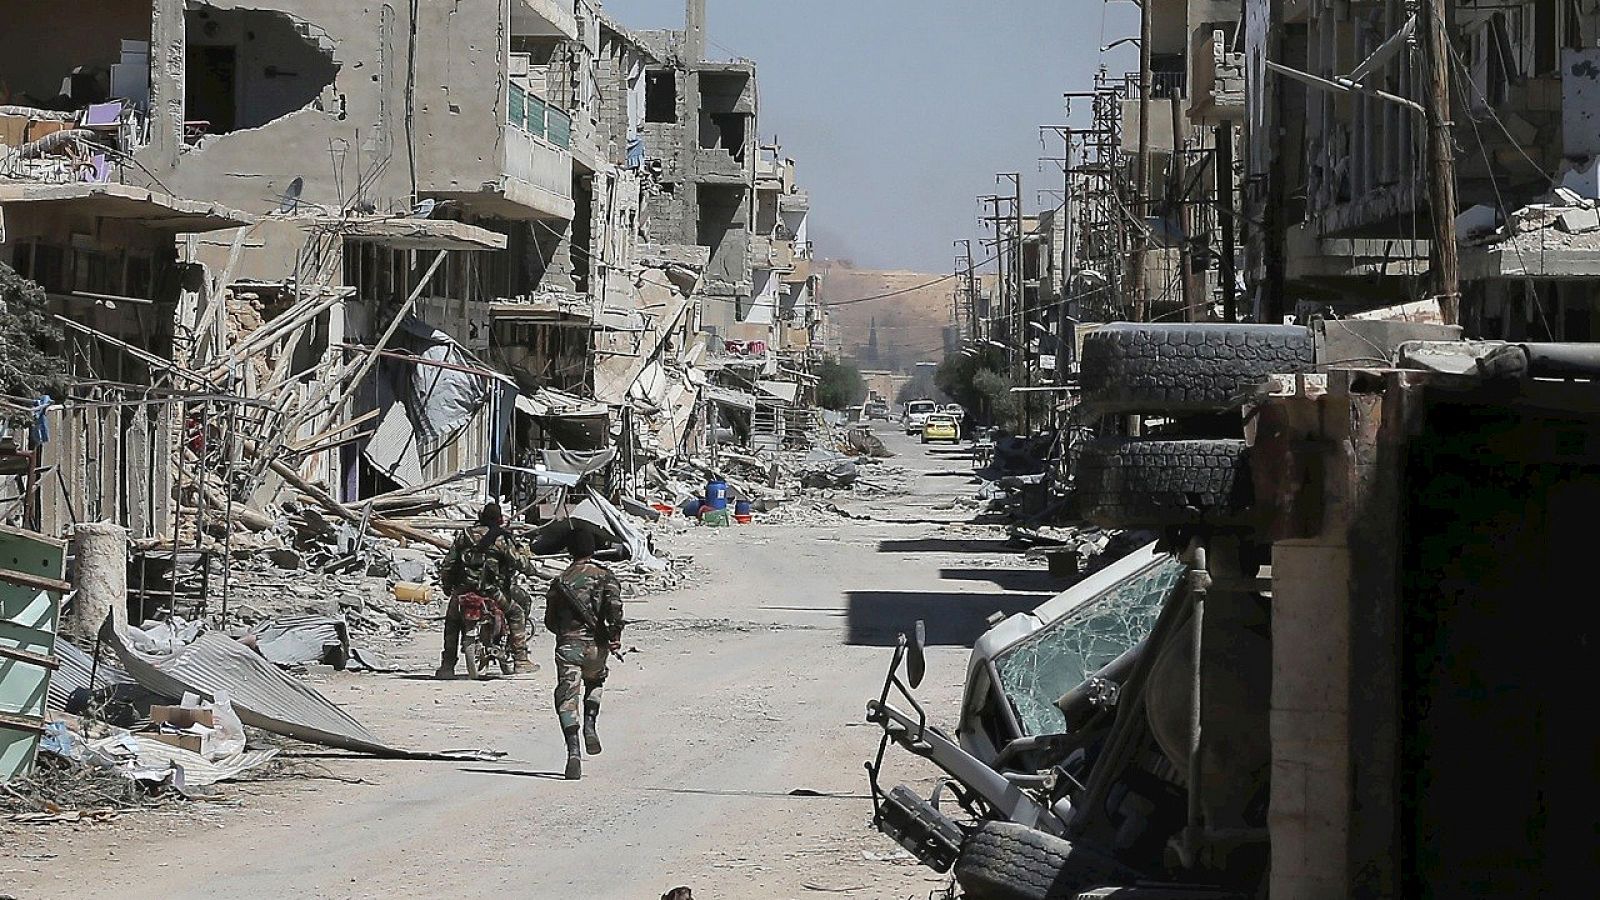 Soldados del Ejército sirio patrullan, el cuatro de abril, la ciudad de al-Qaryatain, en la provincia de Homs, en Siria. AFP PHOTO / JOSEPH EID